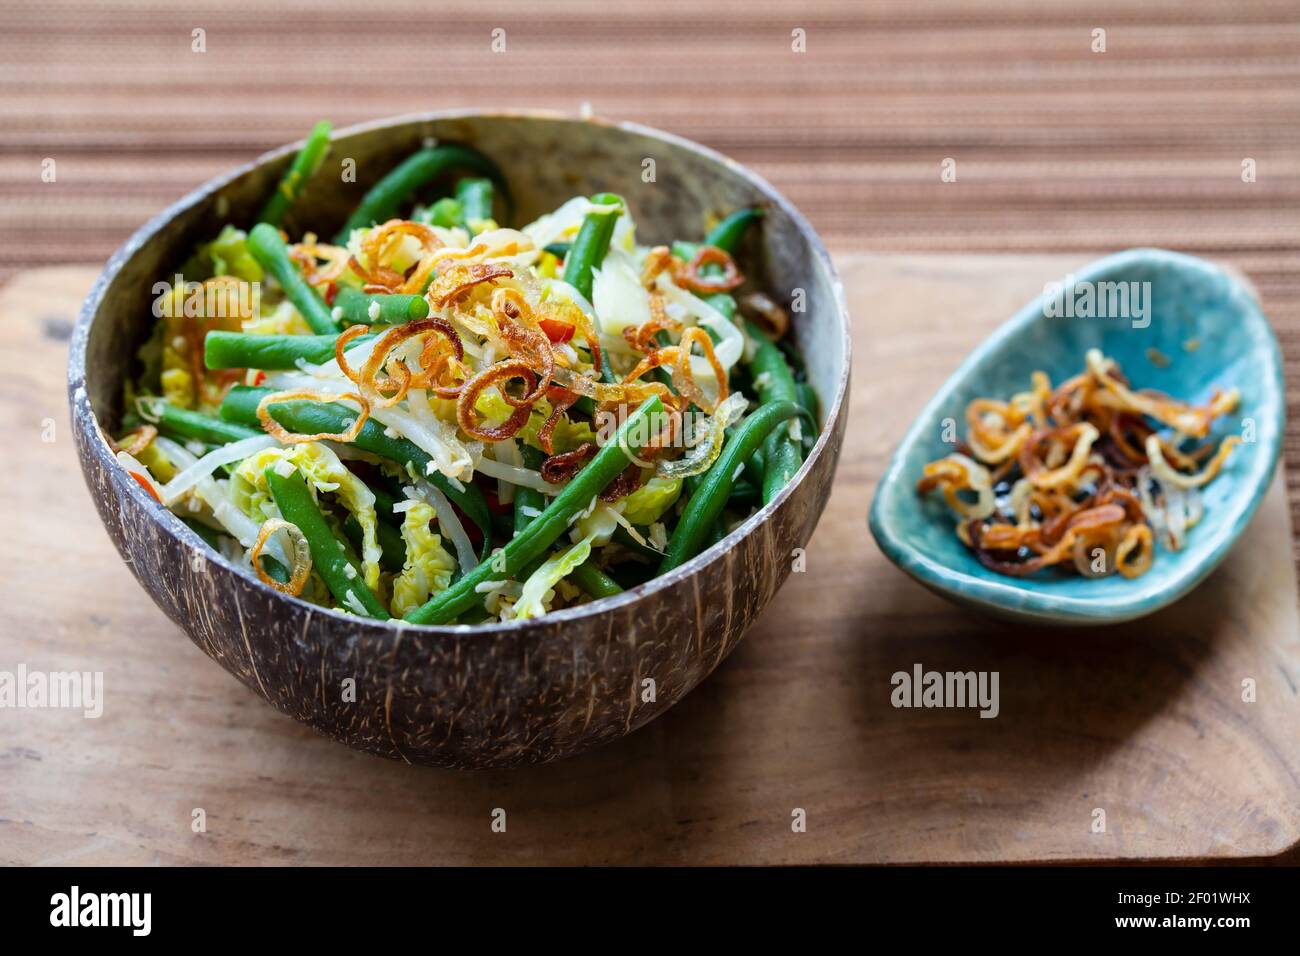 Würziges indonesisches Gemüse mit grünen Bohnen, Bohnensprossen und  knusprigen Schalotten Stockfotografie - Alamy